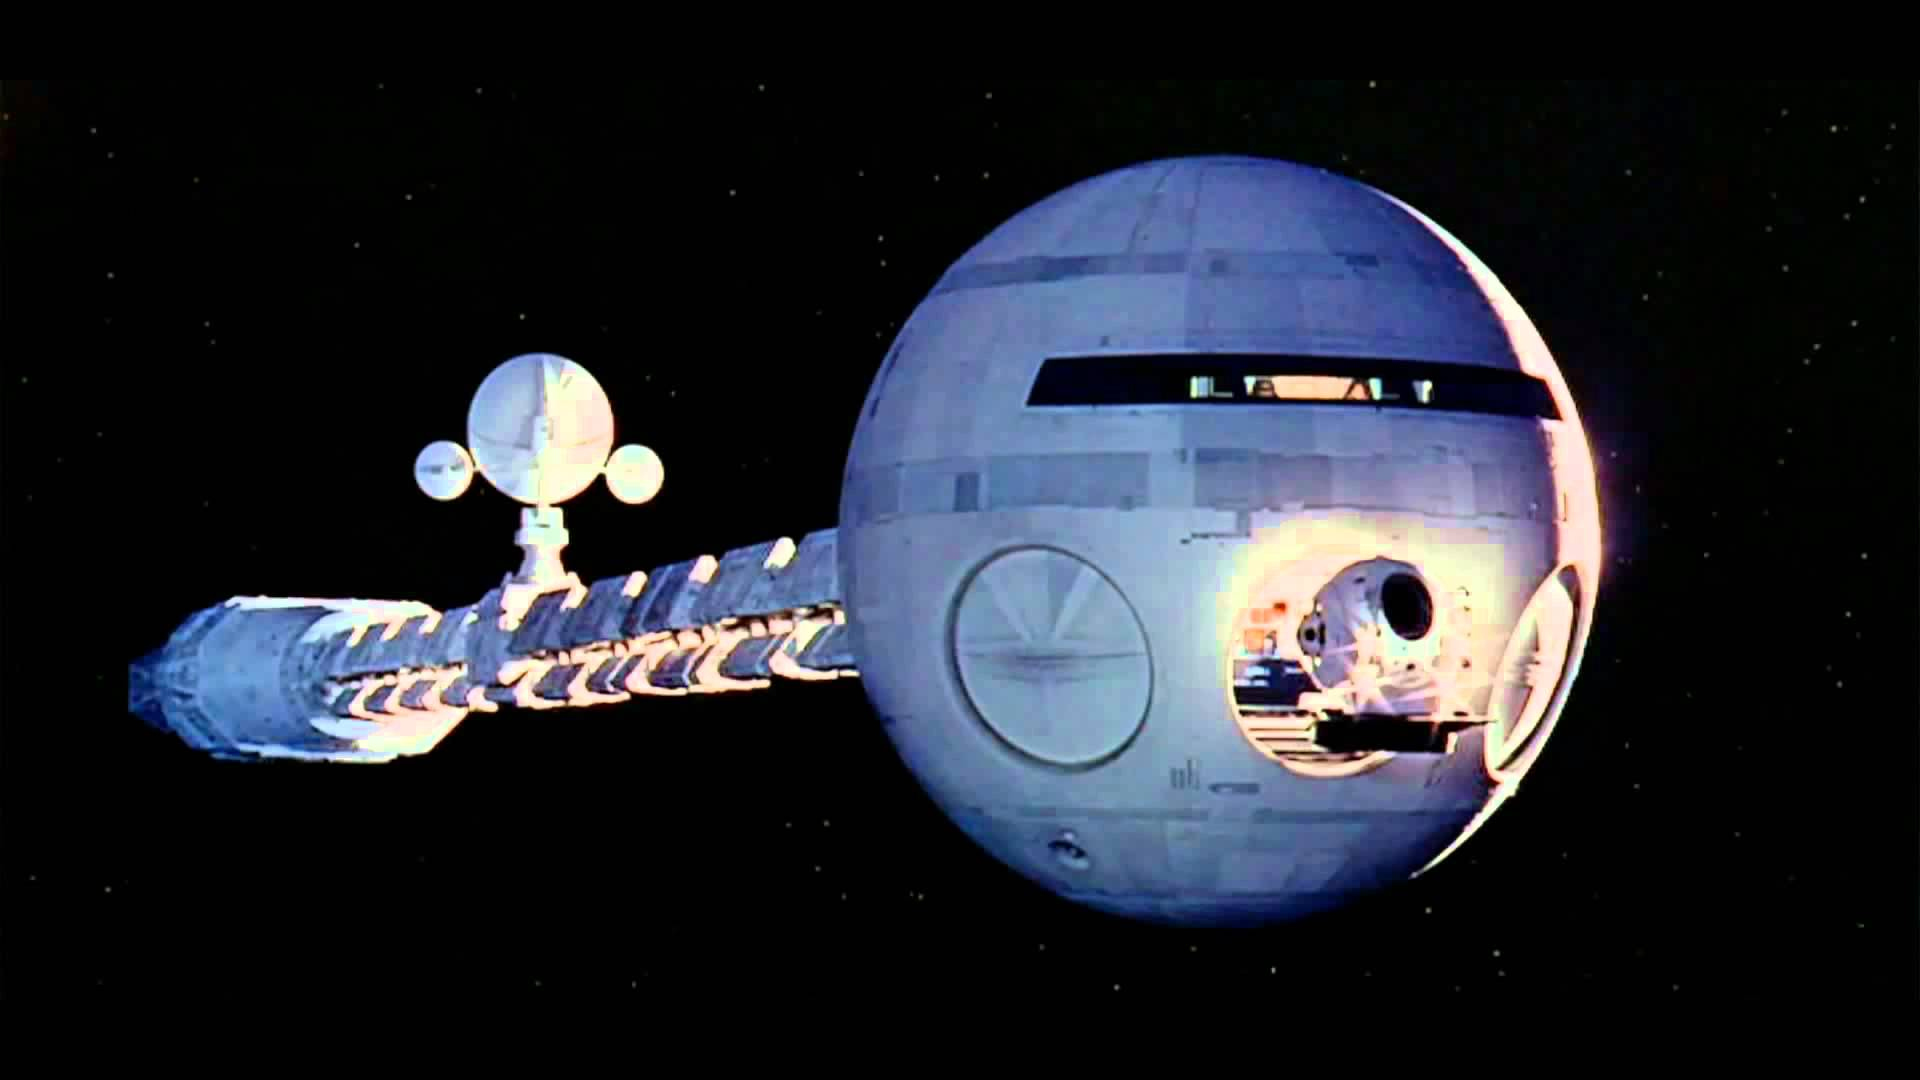 egészség beteg egészségügy jövőkutatás orvos kütyü reform Dr. Meskó Bertalan diagnózis orvosok NASA júzer 2001: Űrodüsszeia IBM jövőkép sci-fi Stanley Kubrick